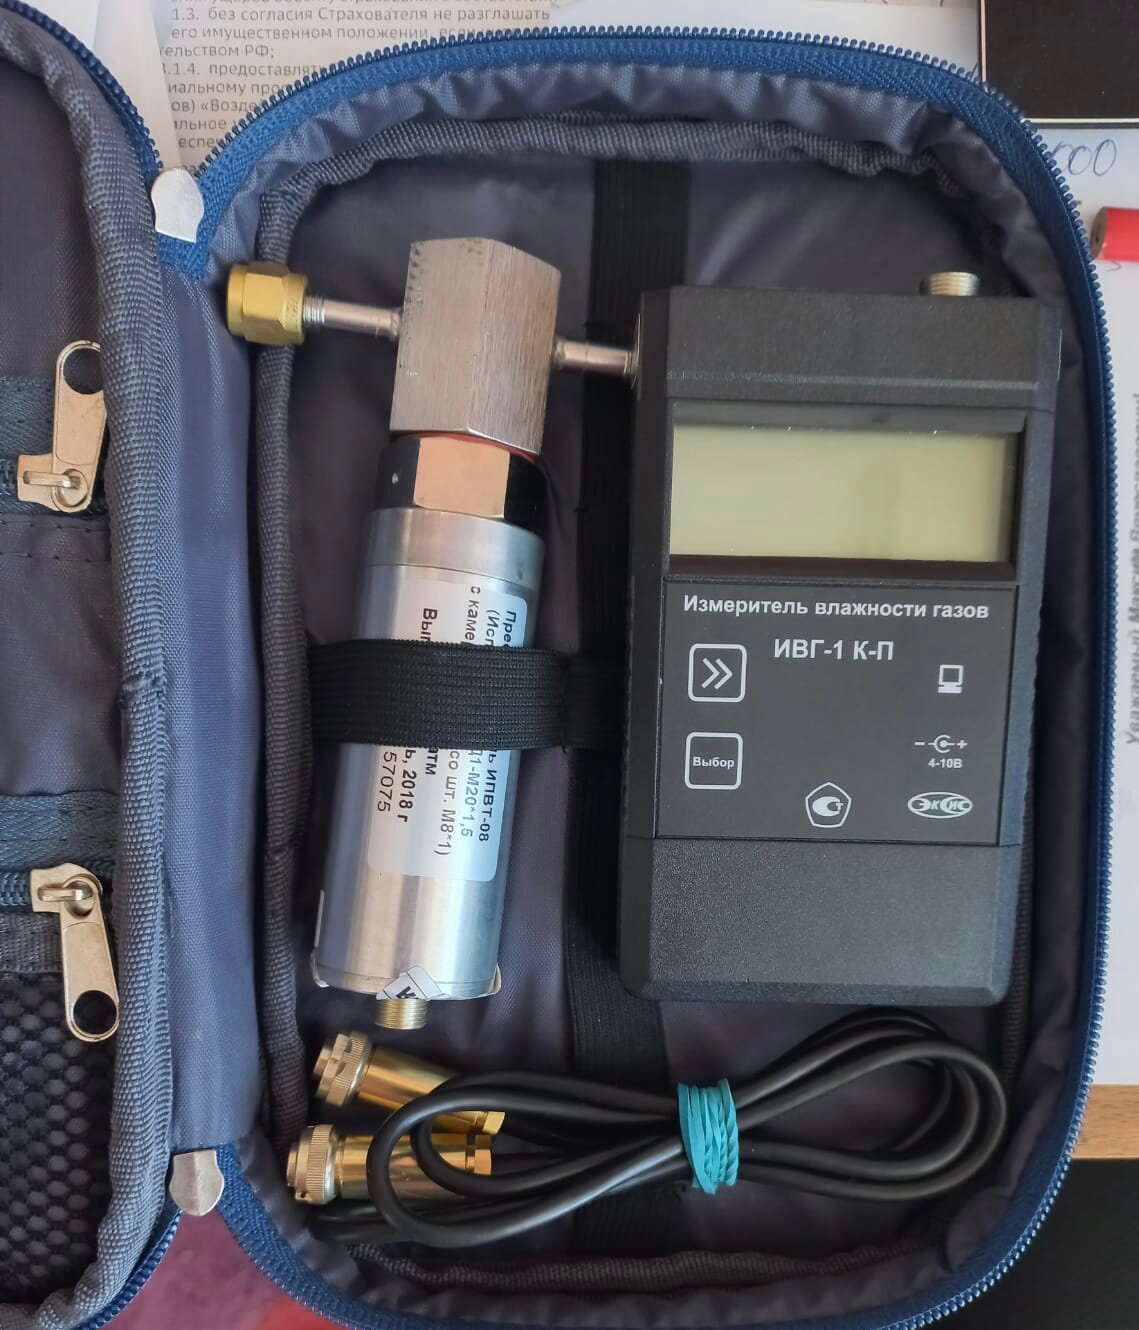 ИВГ-1 К-П — портативный одноканальный измеритель микровлажности газов (комплект измерительного блока и преобразователя ИПВТ-08-01-Д1-M20x1,5) - фотография № 2